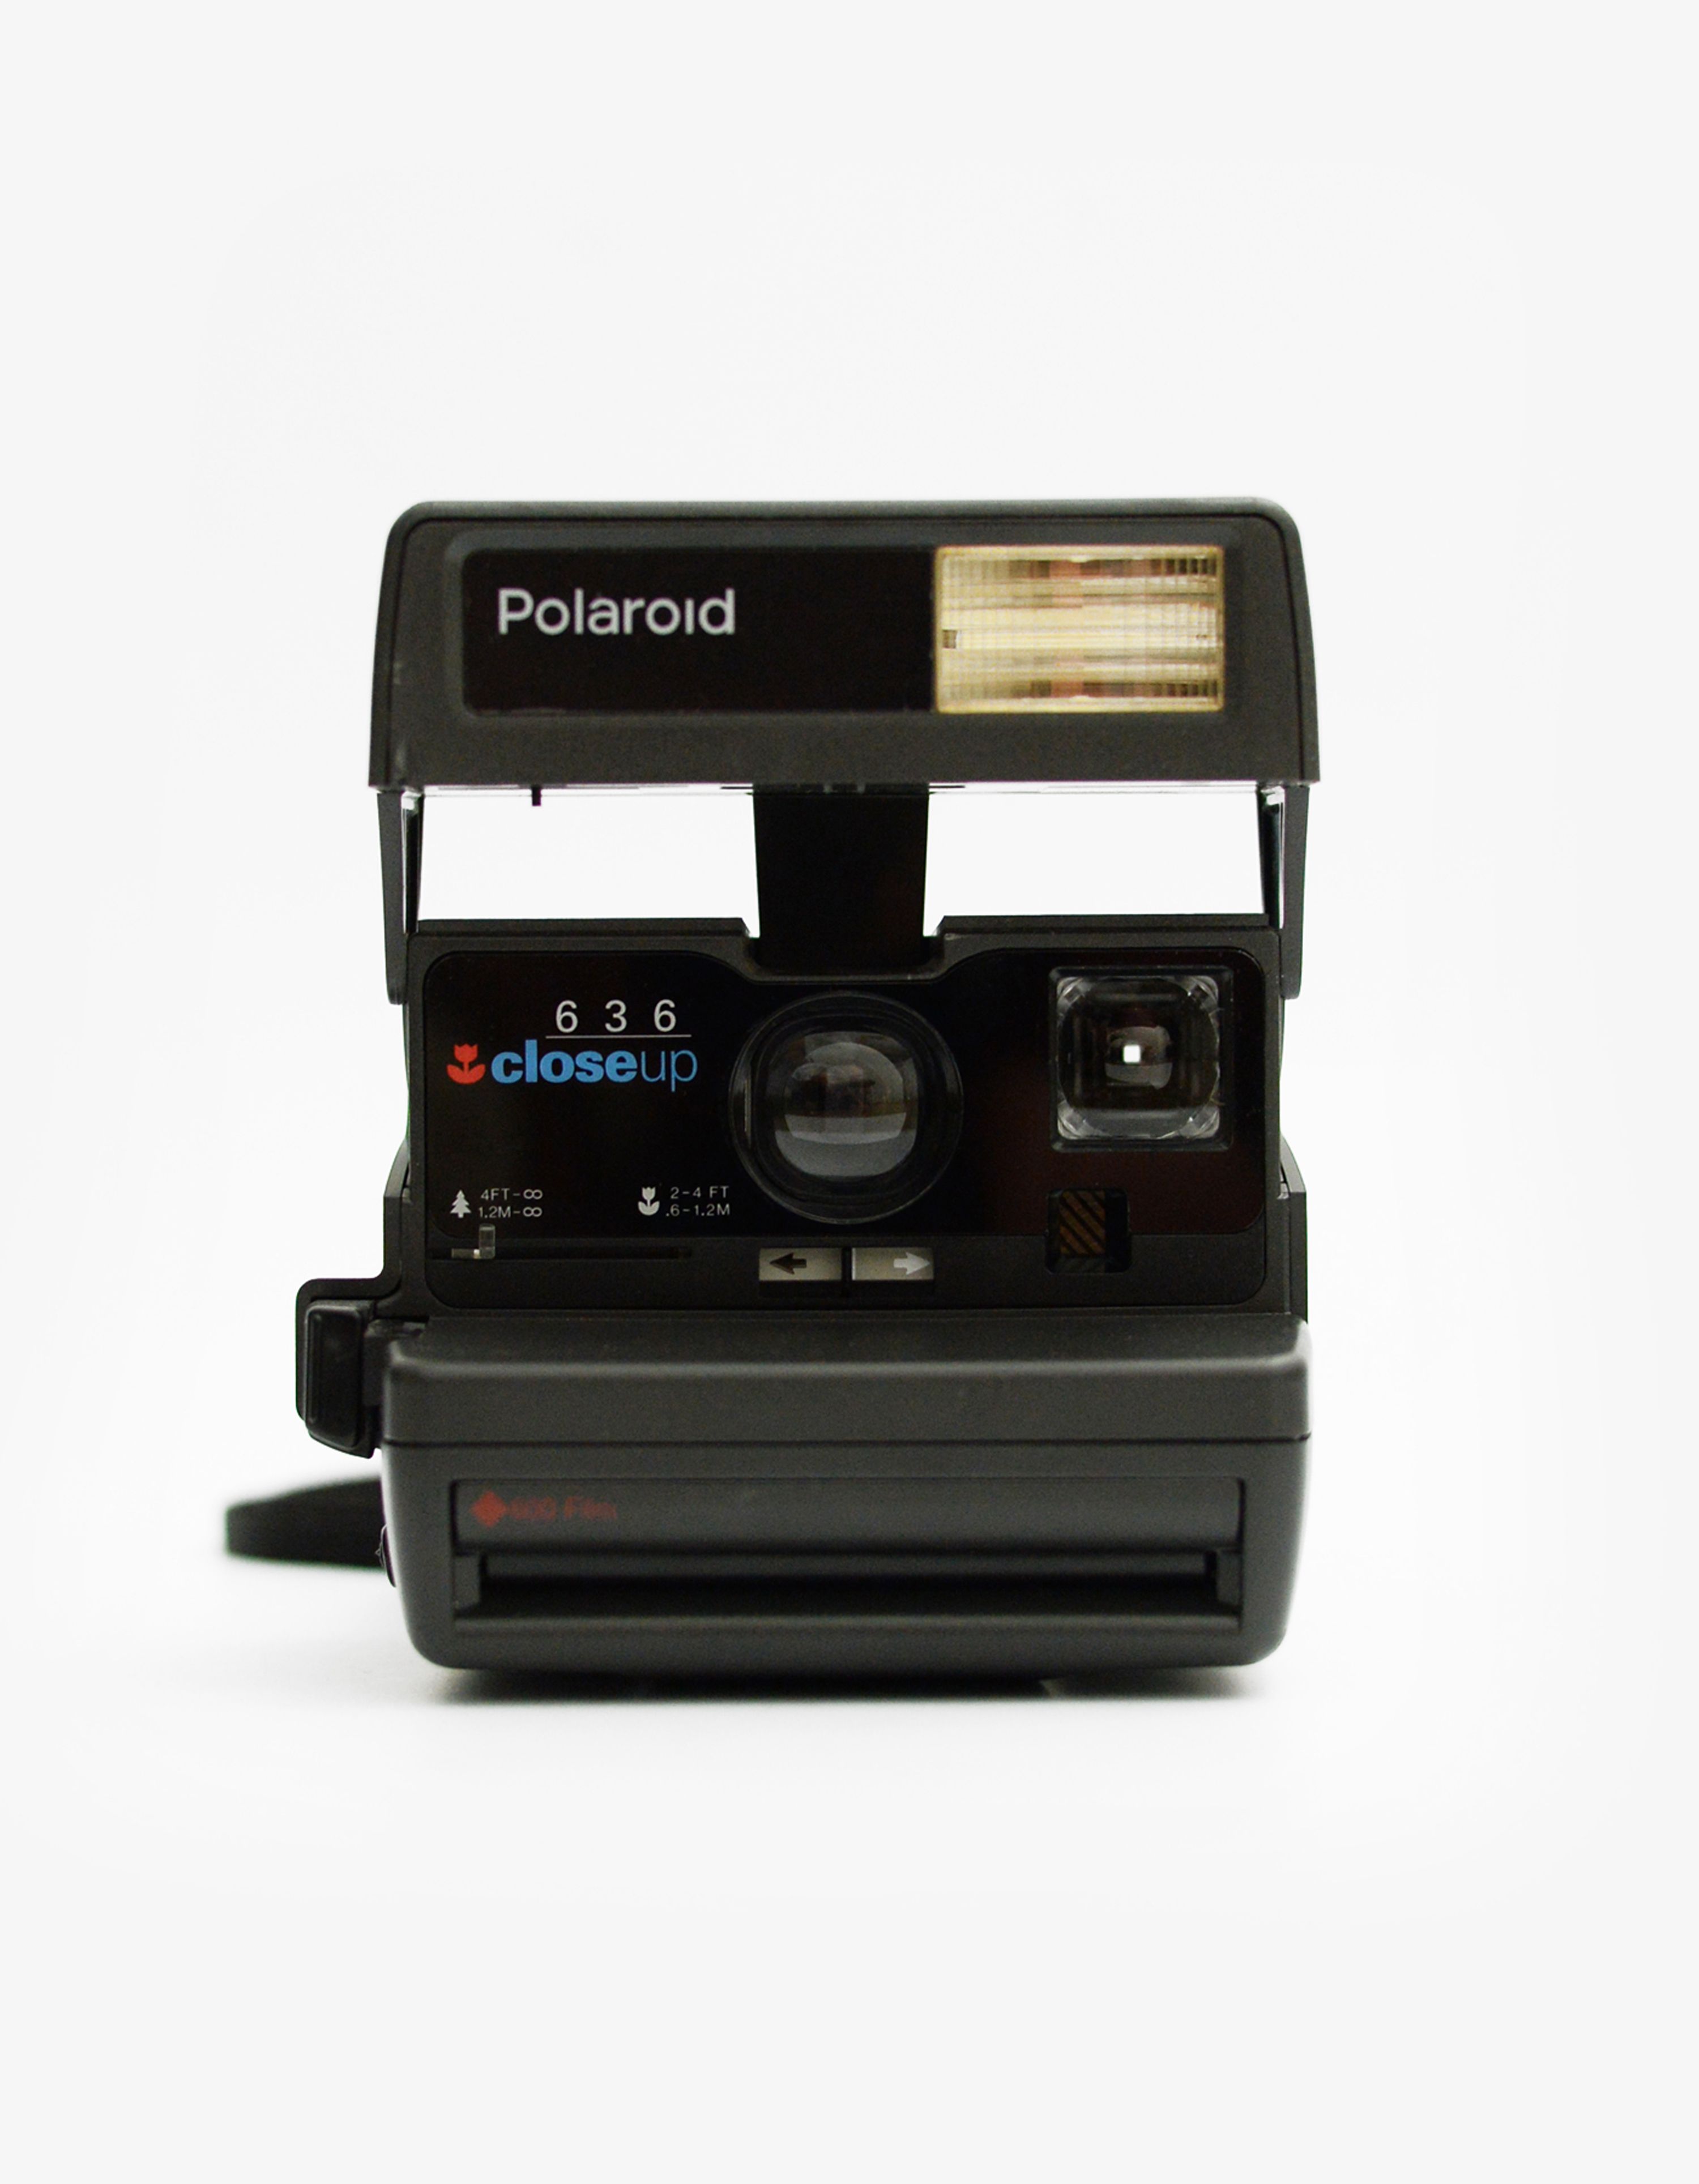 Polaroid 600 camera